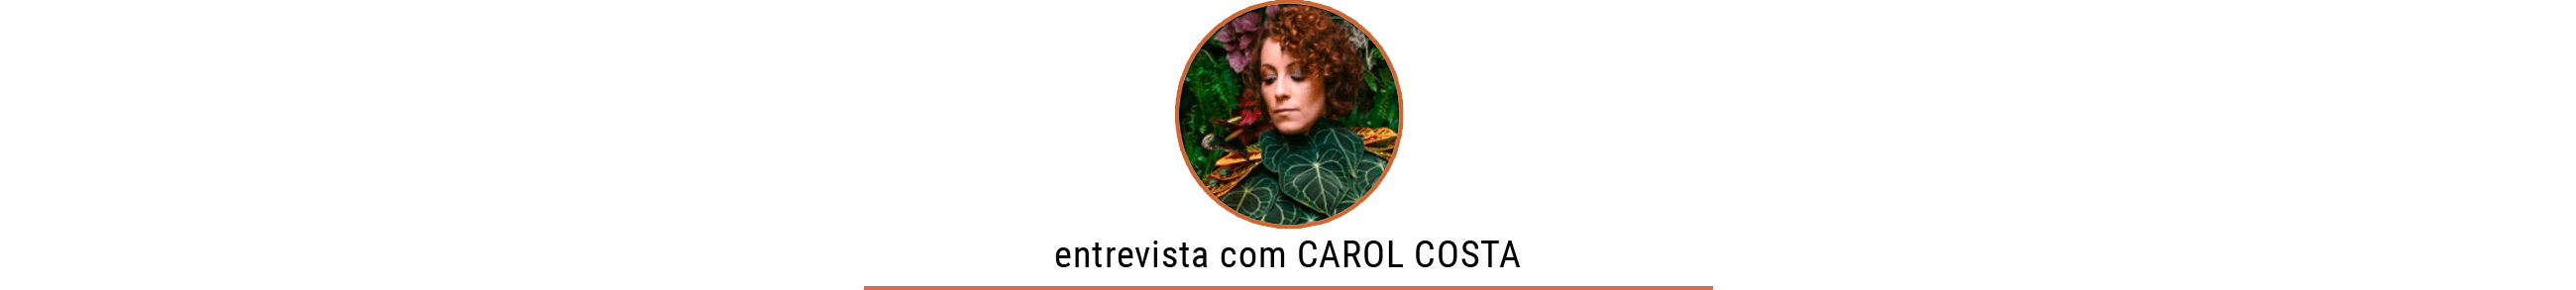 Dicas de plantas com a Carol Costa, no Histórias de Casa